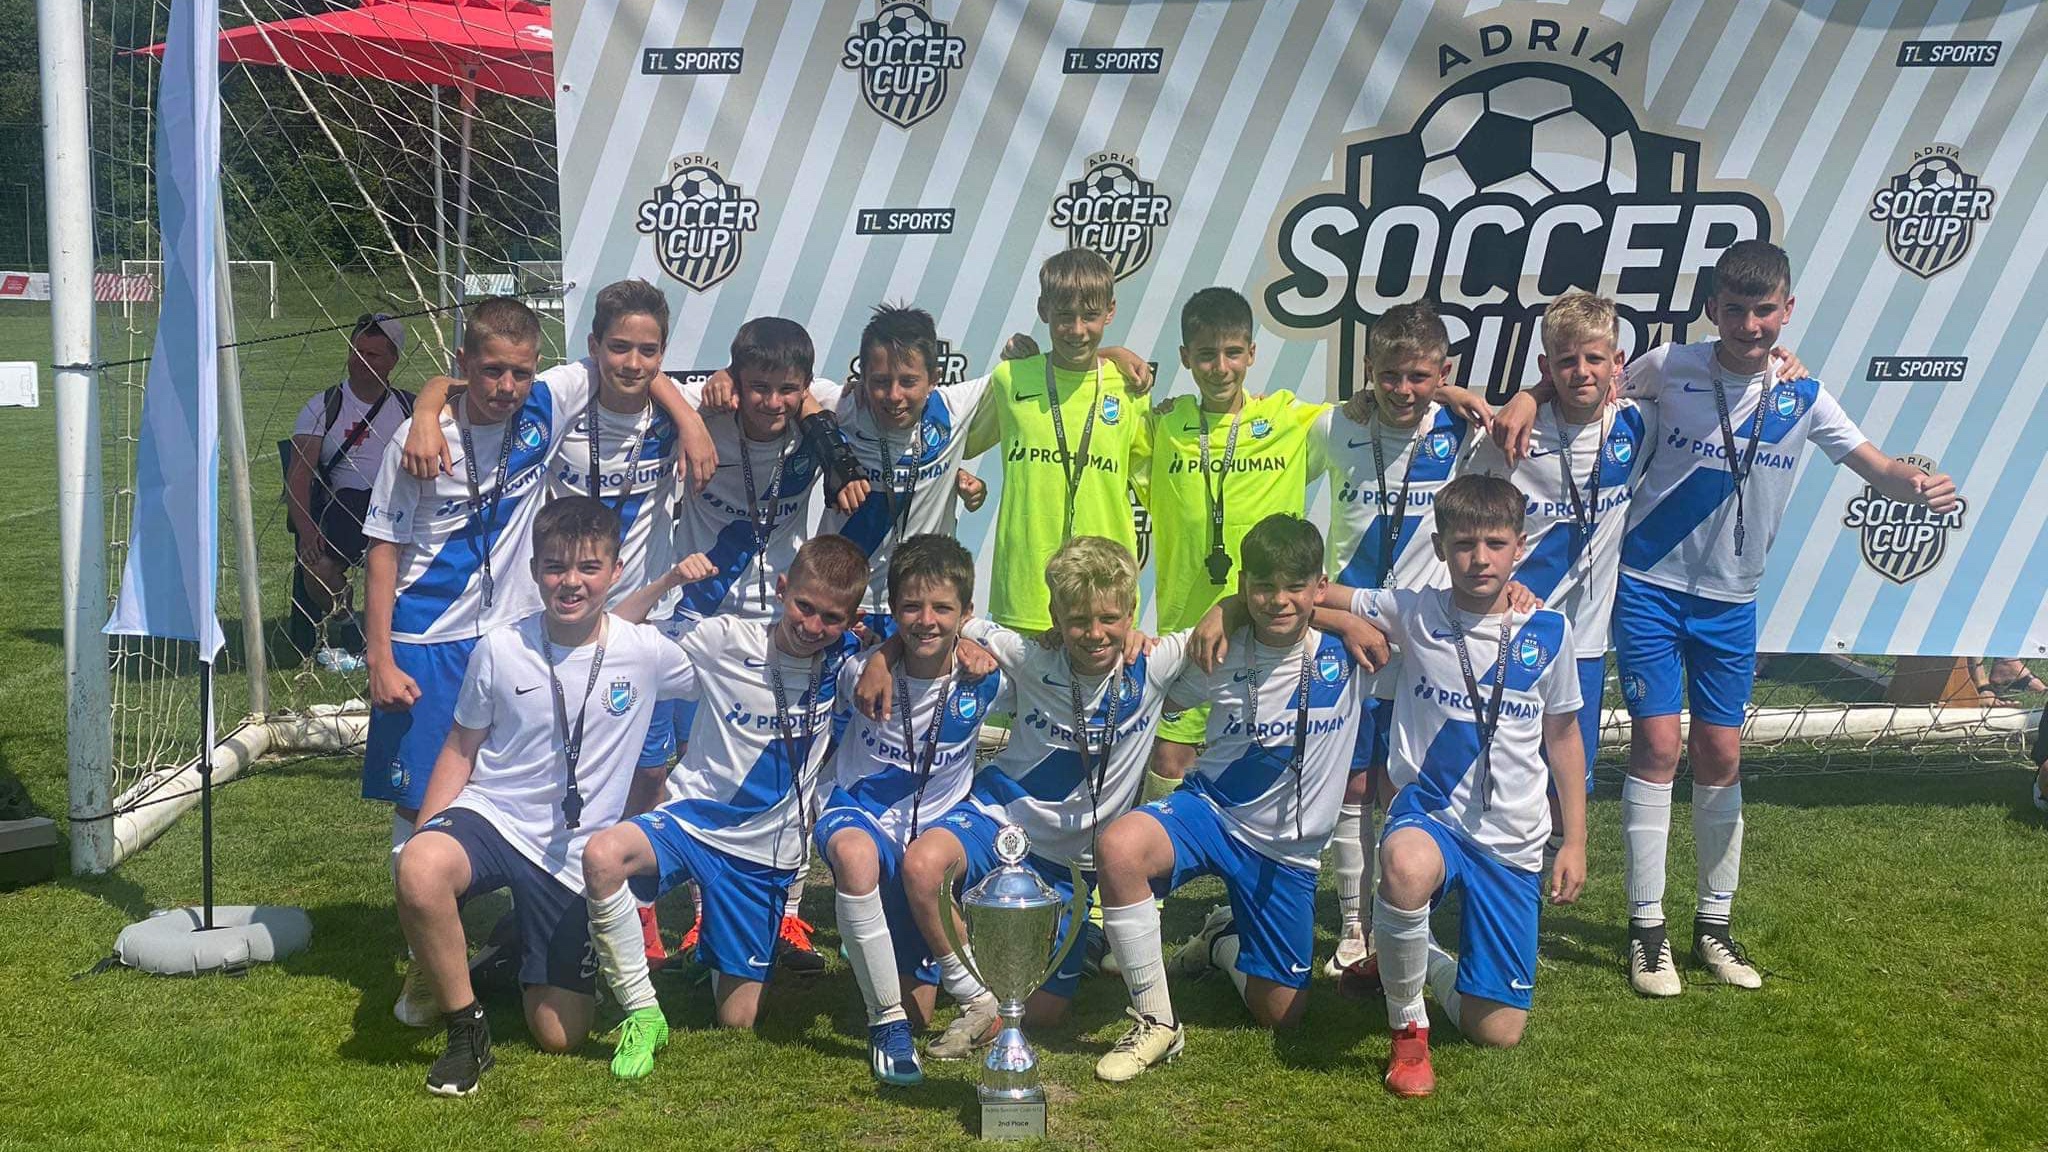 Ezüstérmes lett U12-es csapatunk az Adria Soccer Cupon